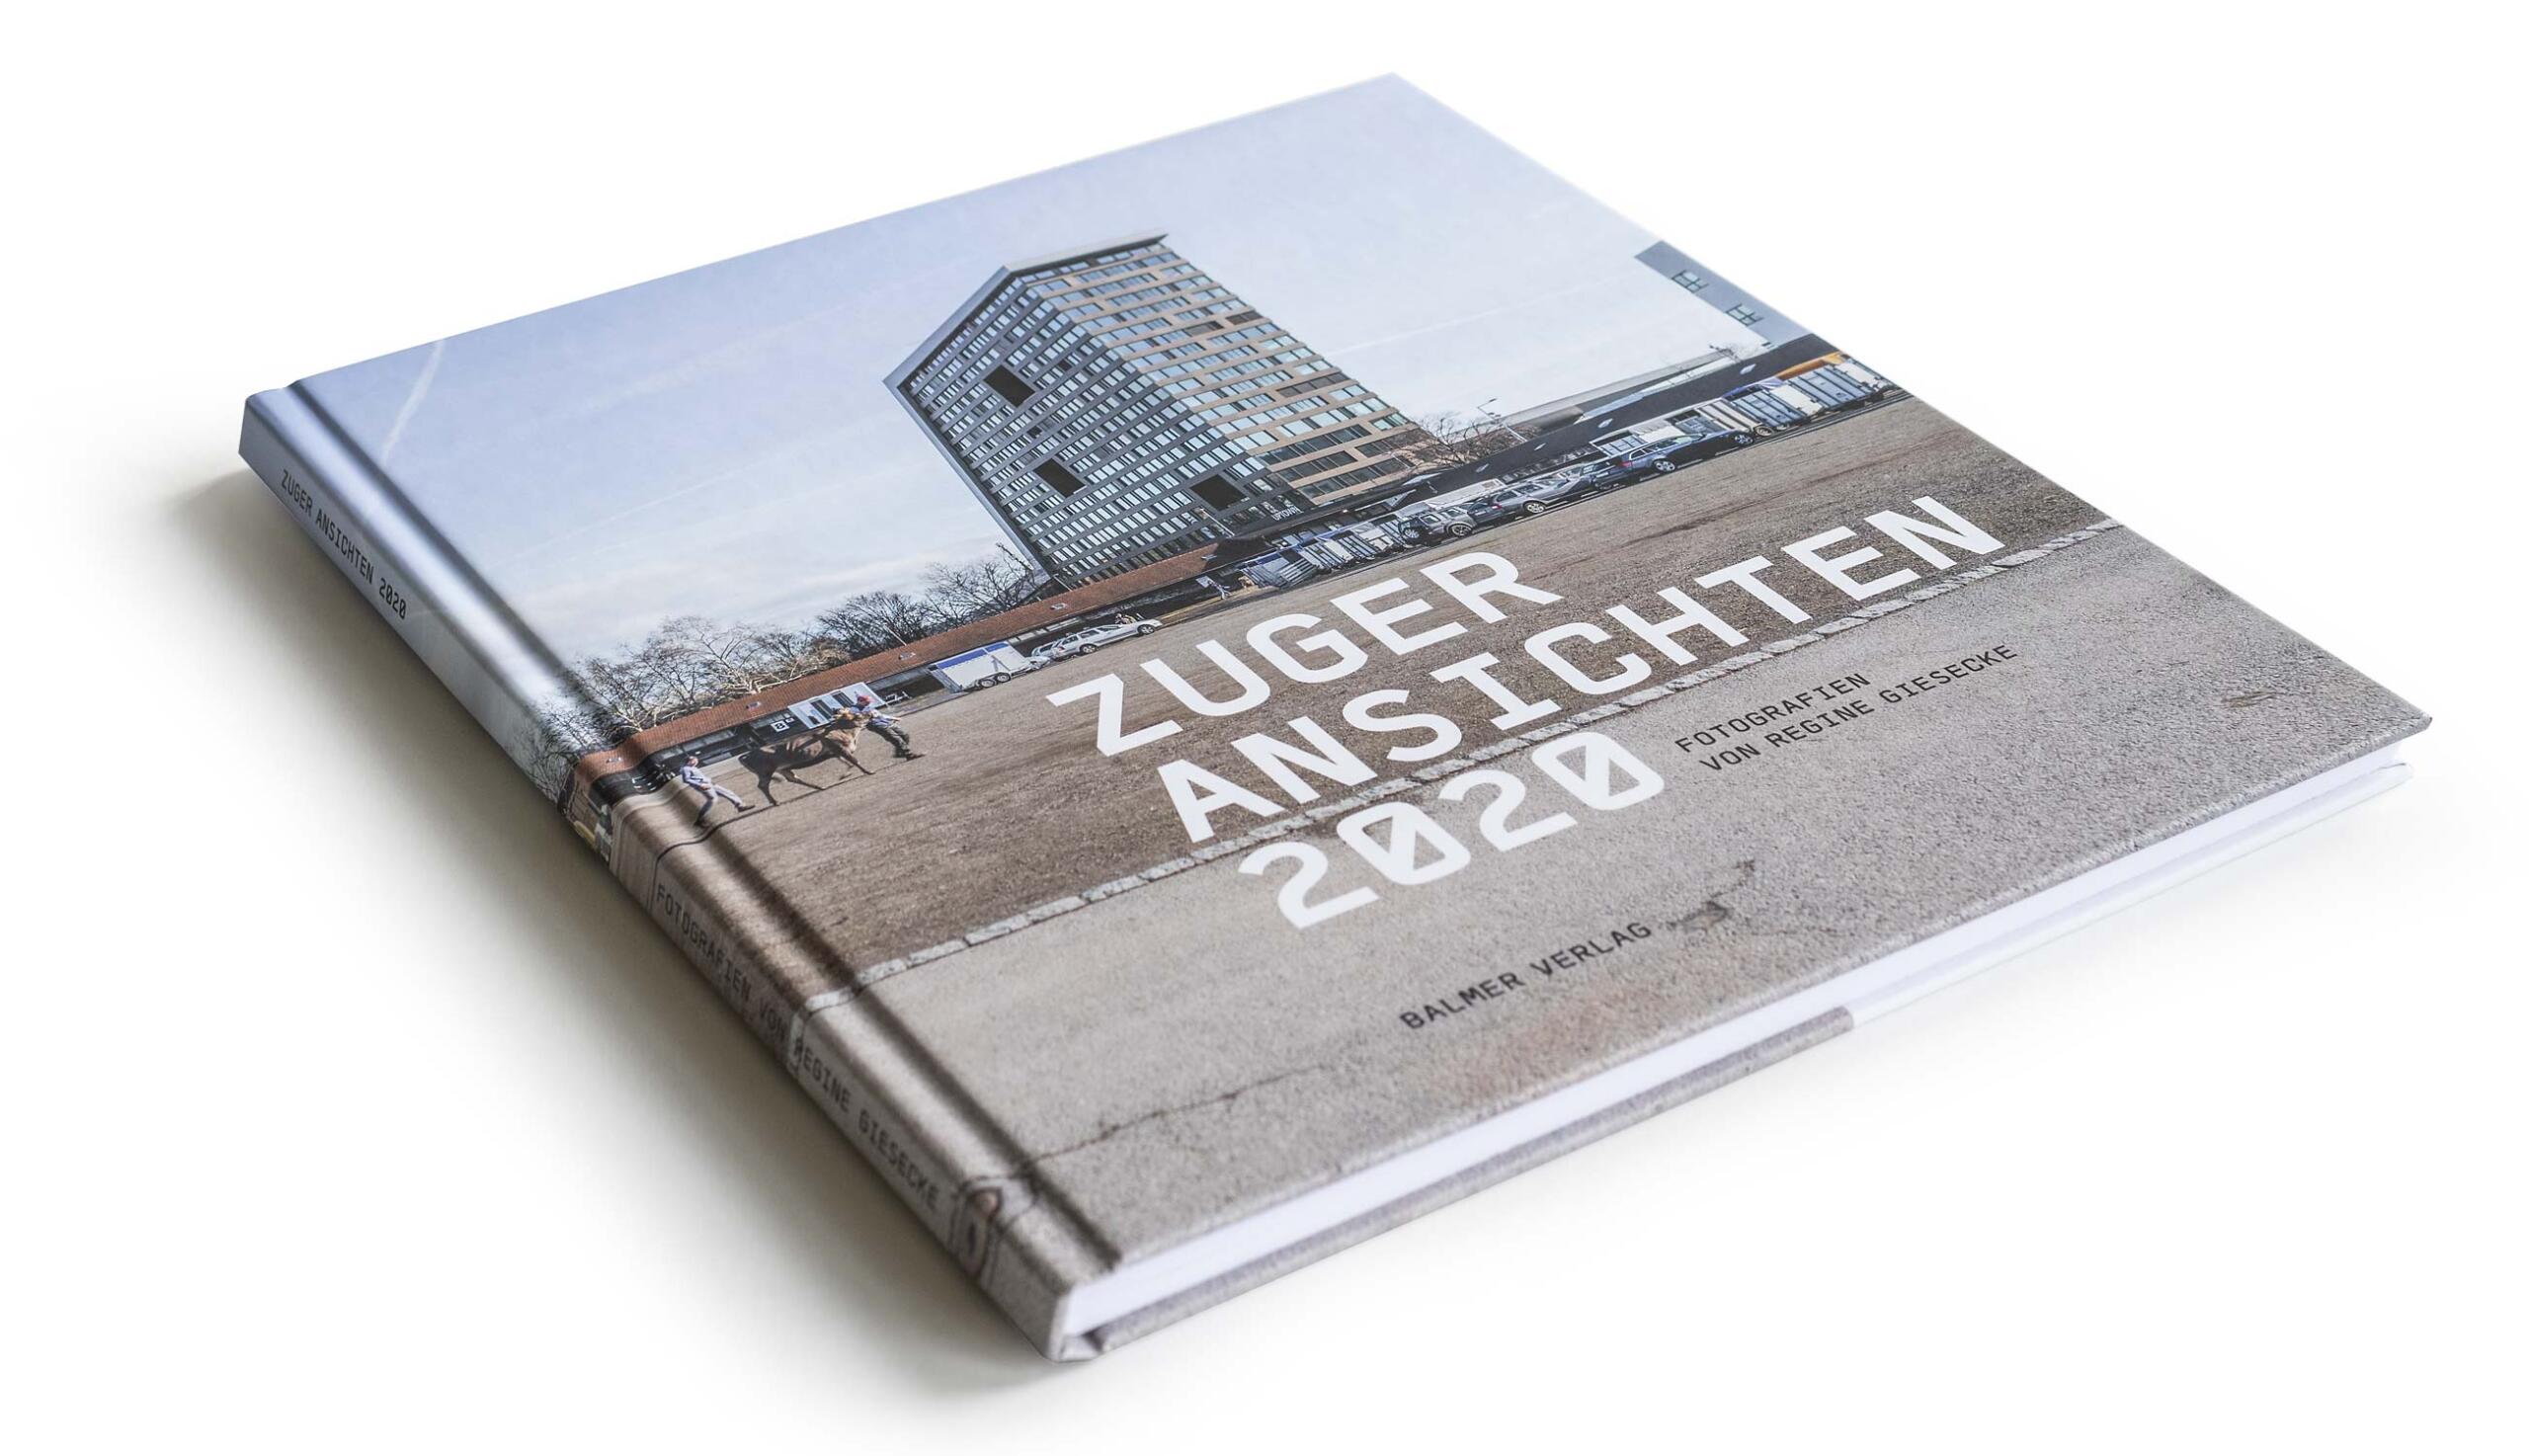 Buch Zuger Ansichten 2020 von Regine Giesecke